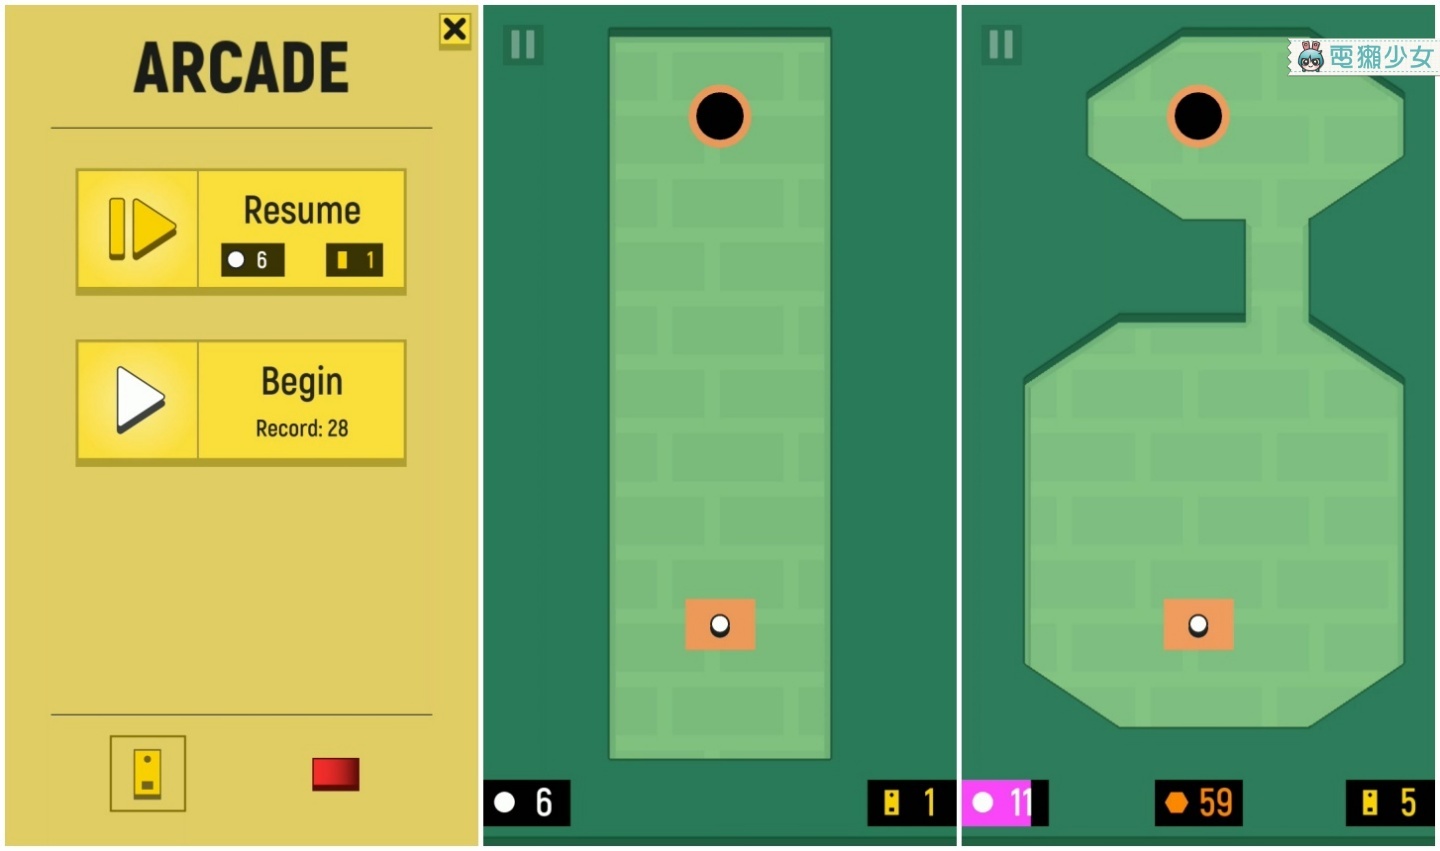 高爾夫球小遊戲 每破一關都需要一桿進洞『 Monogolf 』 Android